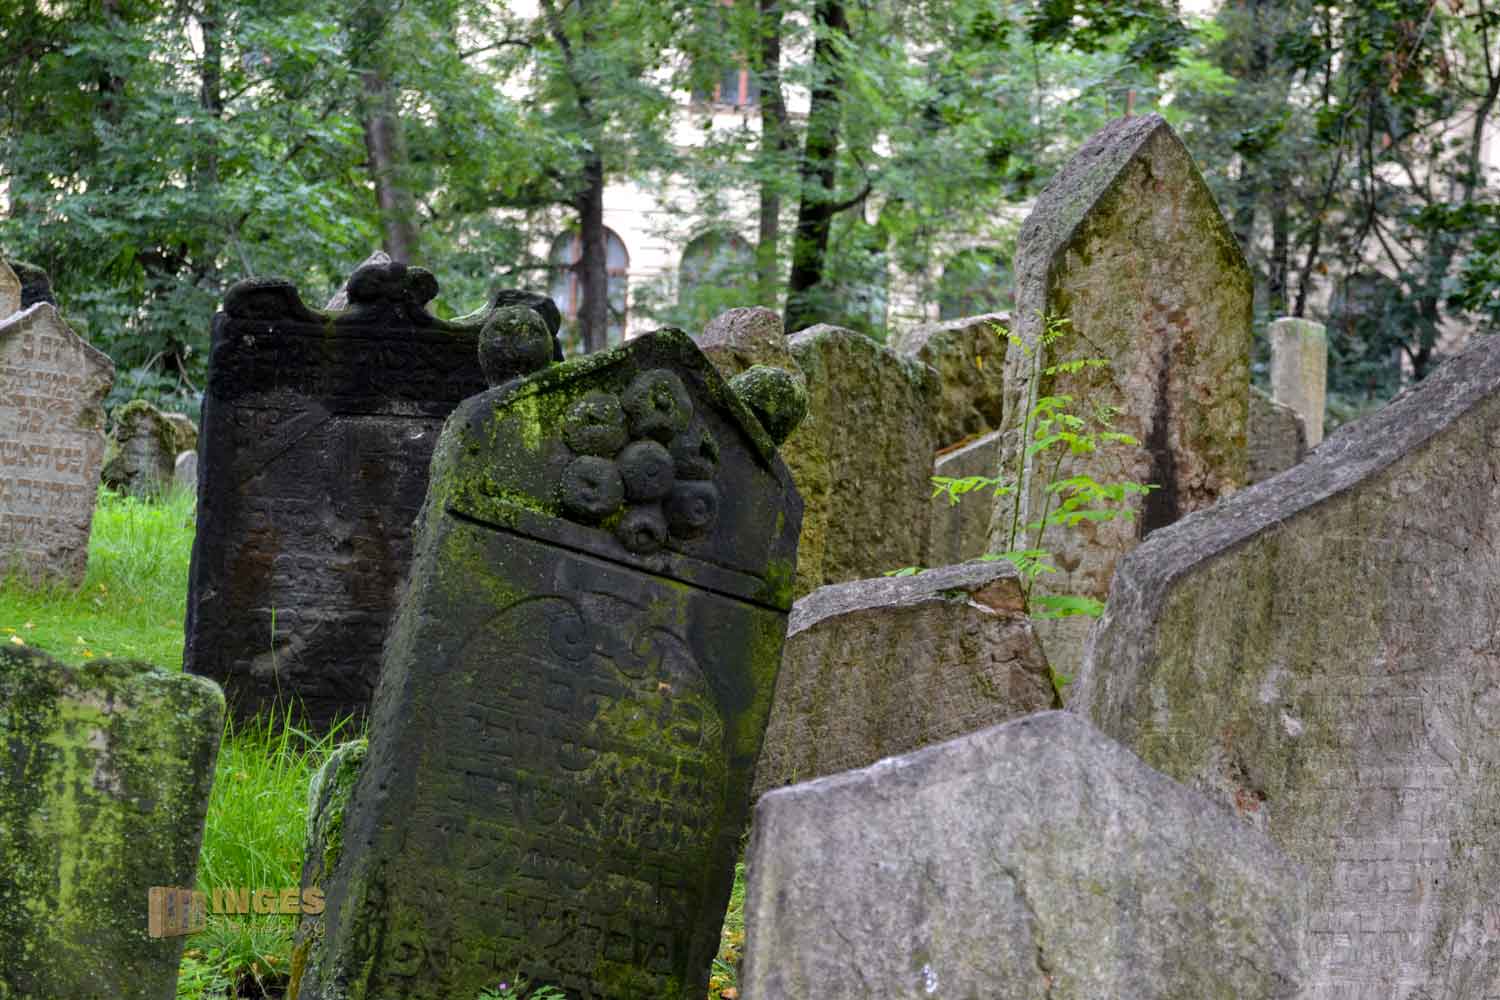 Alter jüdischer Friedhof in Prag